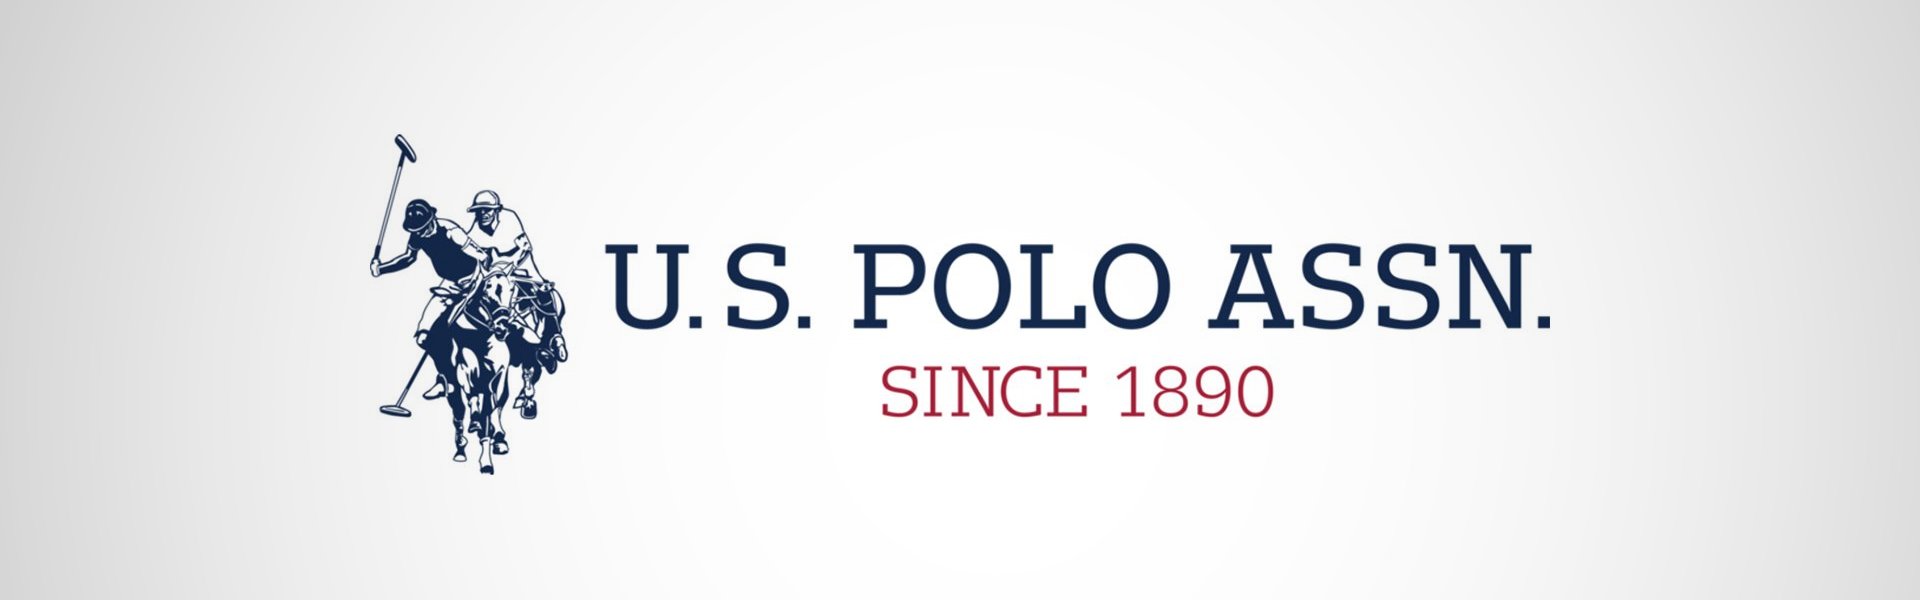 U.S. Polo miesten kengät Altena, valkoinen-hiekka U. S. Polo Assn.